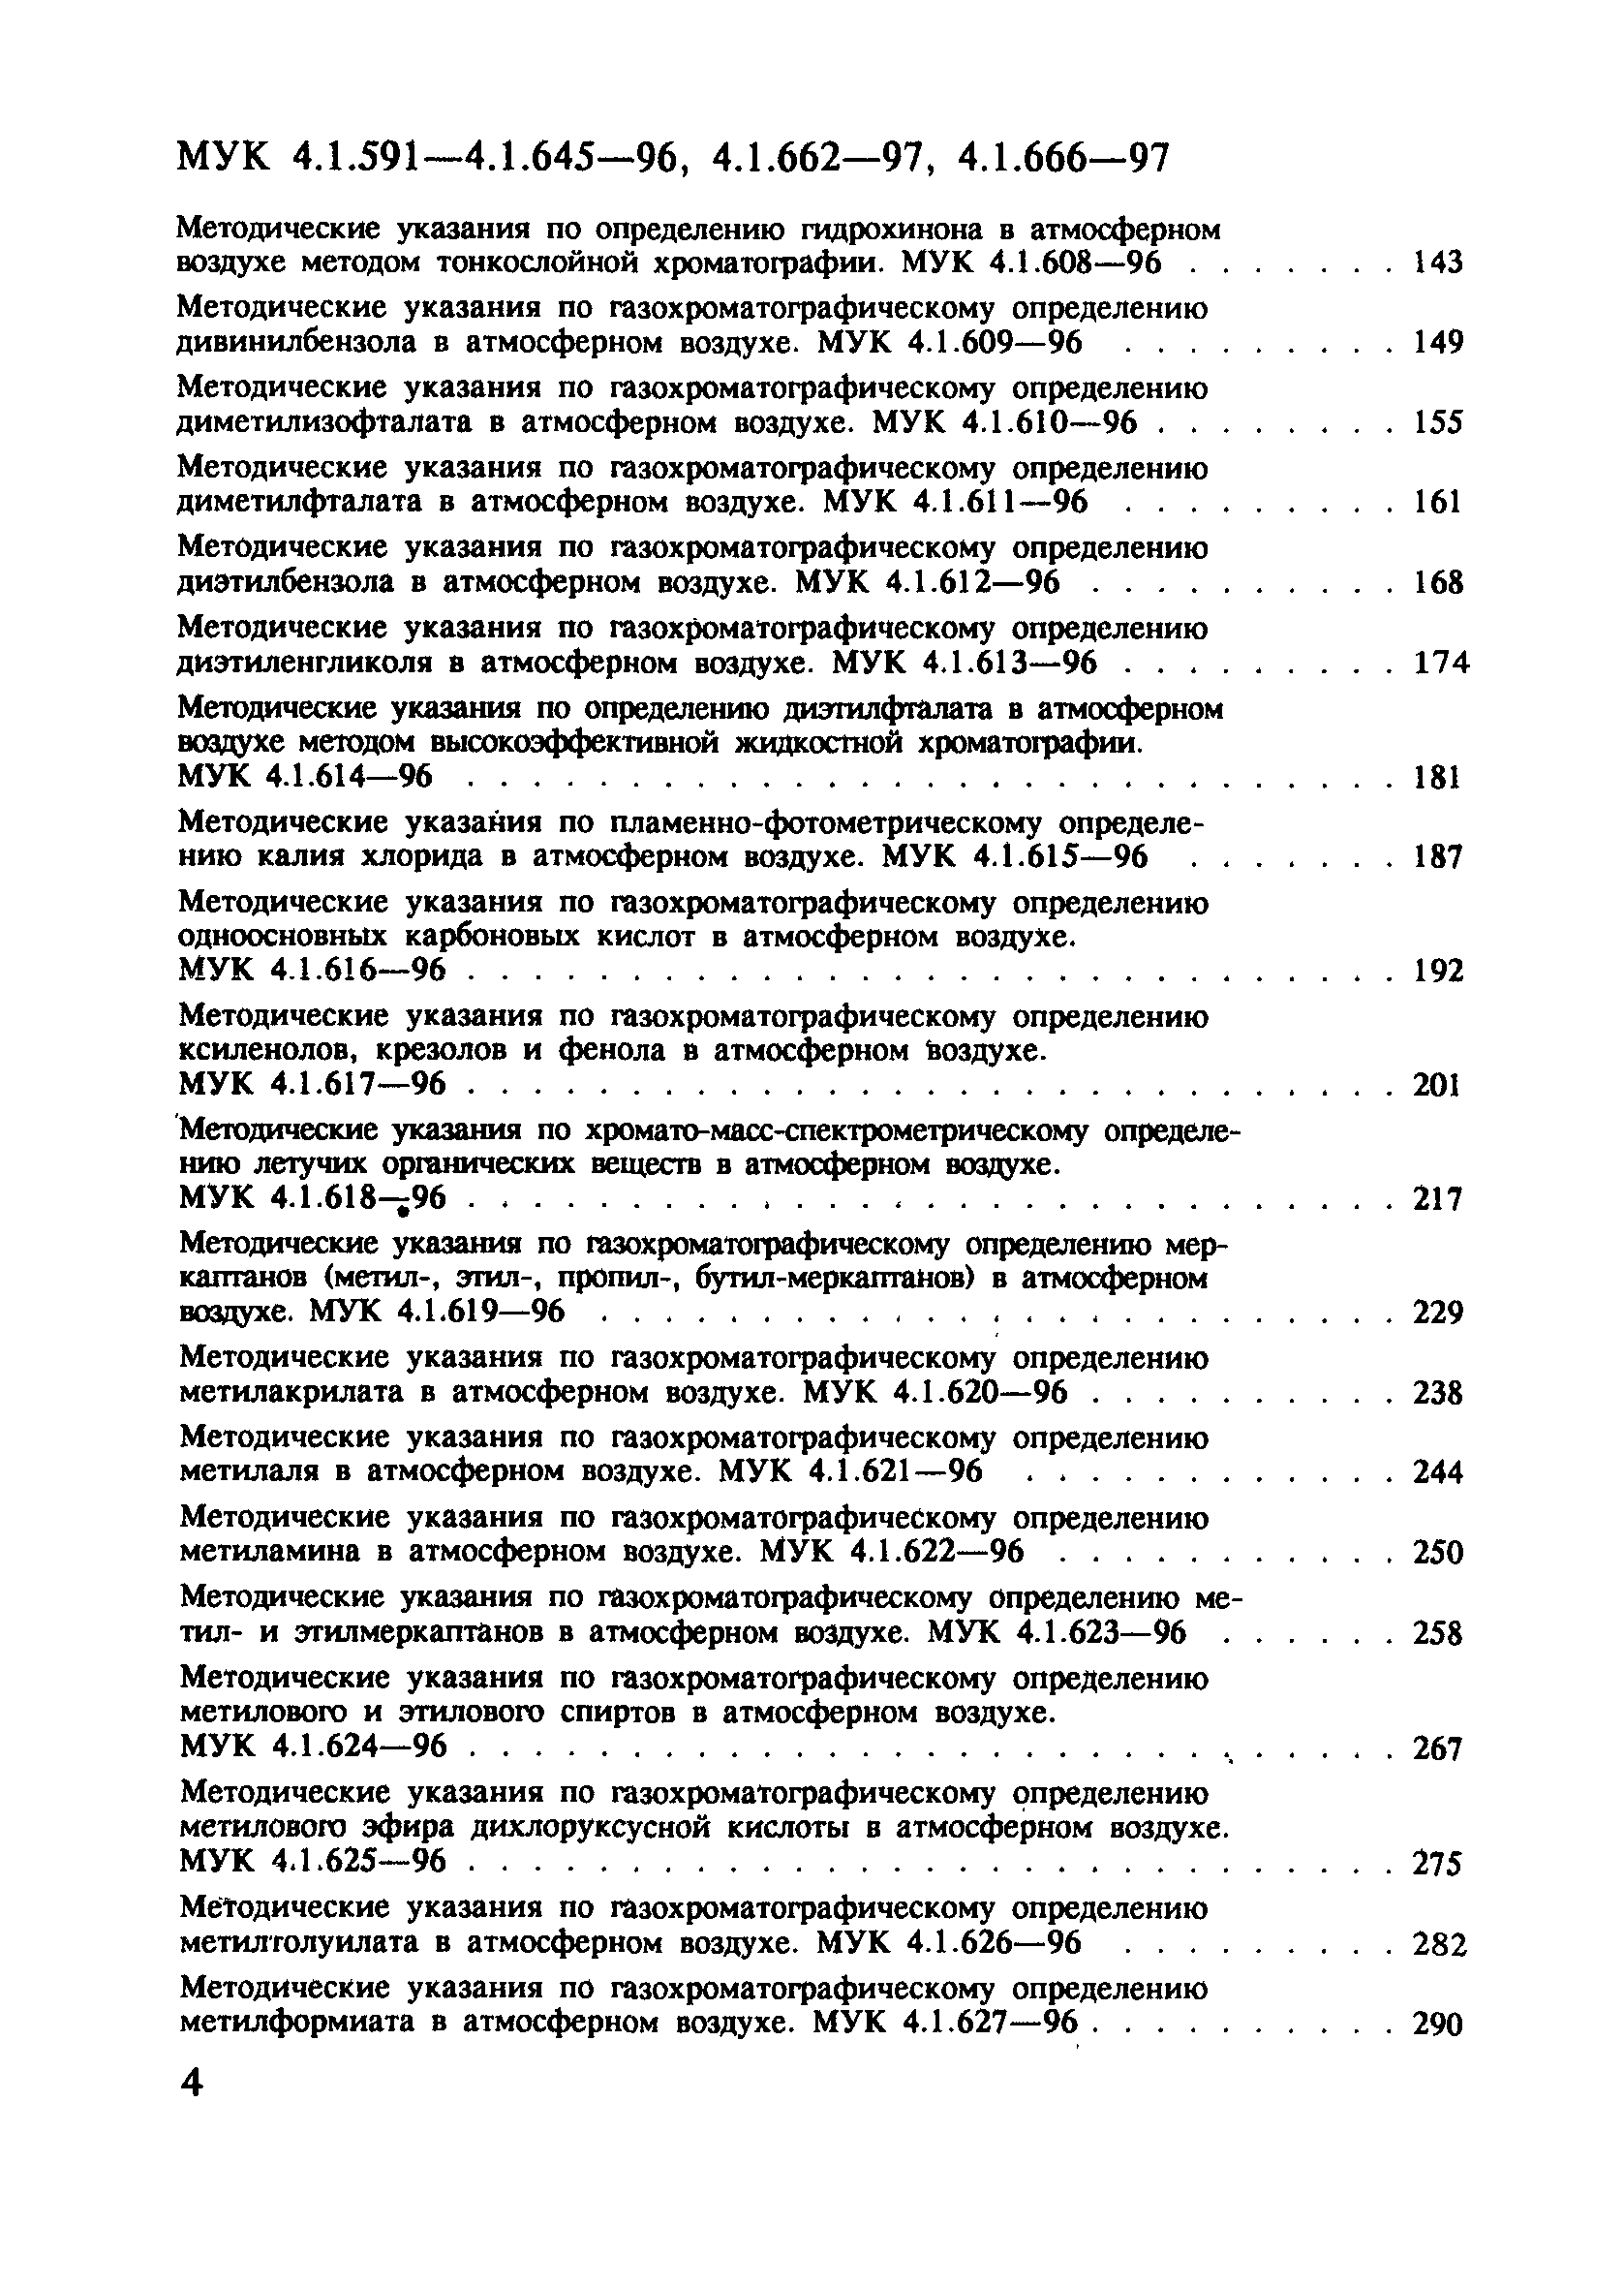 МУК 4.1.610-96